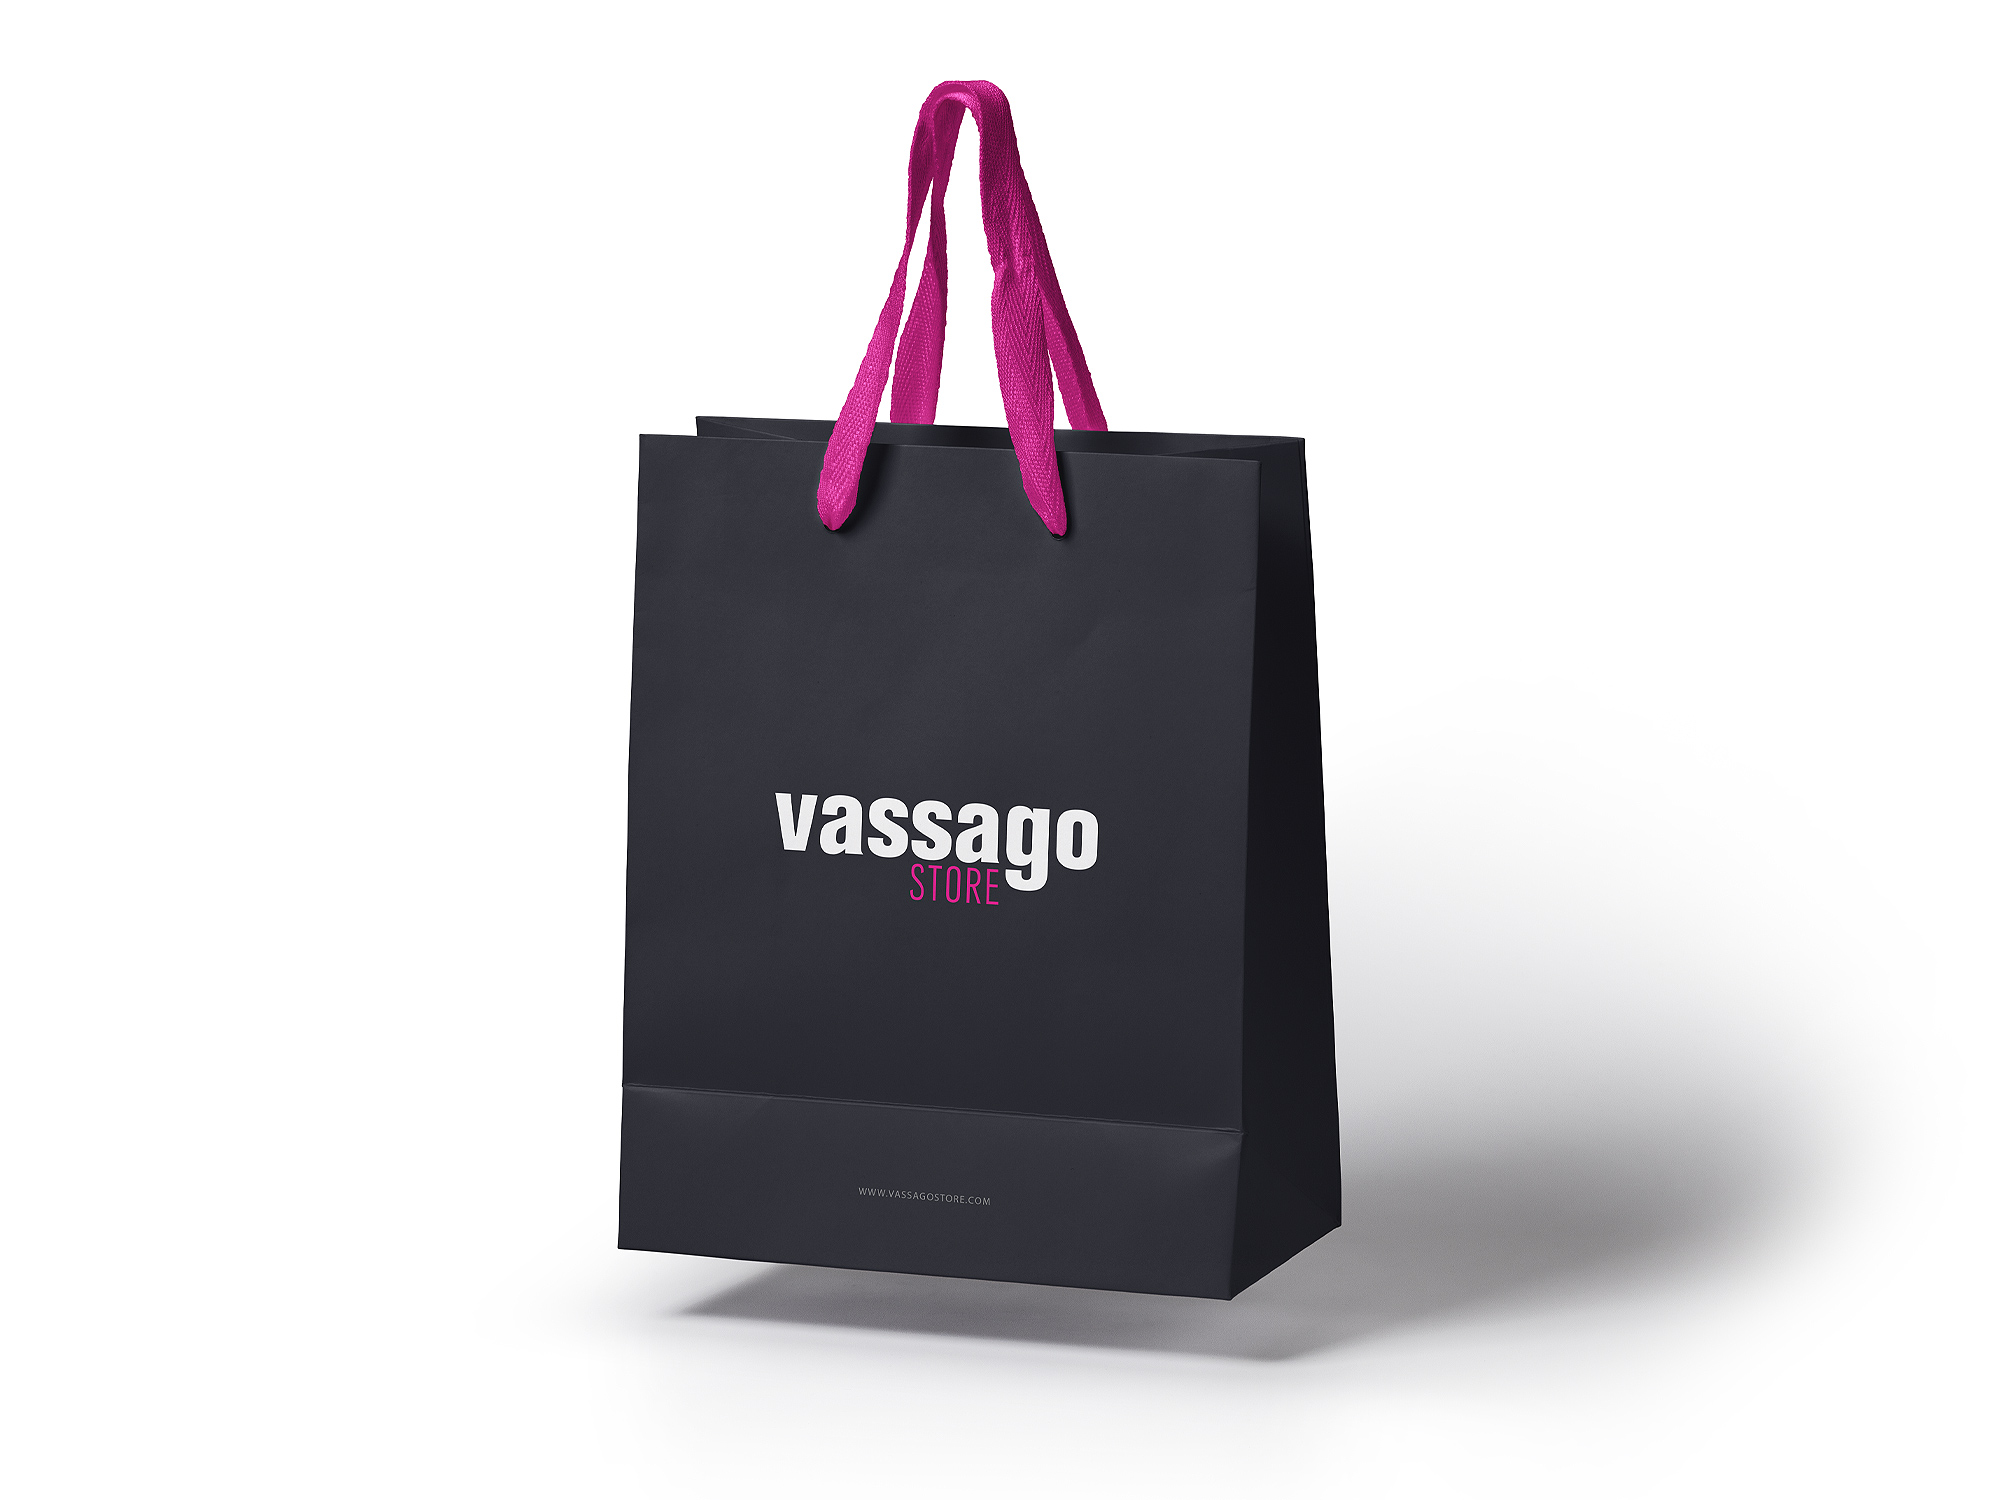 Vassago Store Shopping Bag